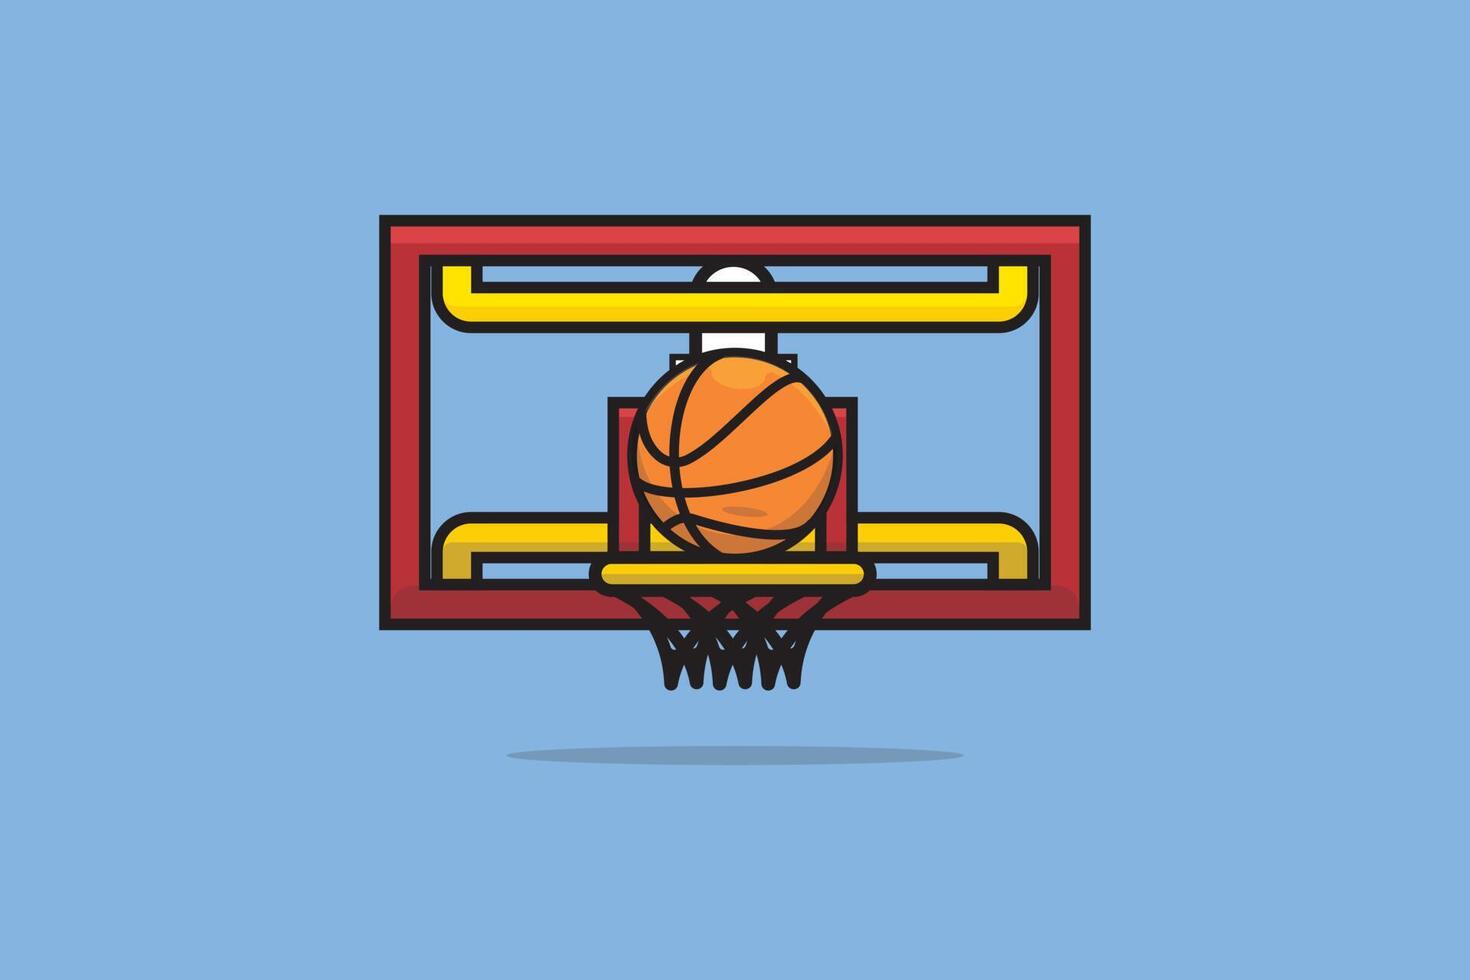 aro de baloncesto e ilustración vectorial de pelota. concepto de icono de objeto deportivo. Ilustración de vector de objetivo de red de baloncesto colorido. diseño vectorial de baloncesto redondo deportivo sobre fondo azul.